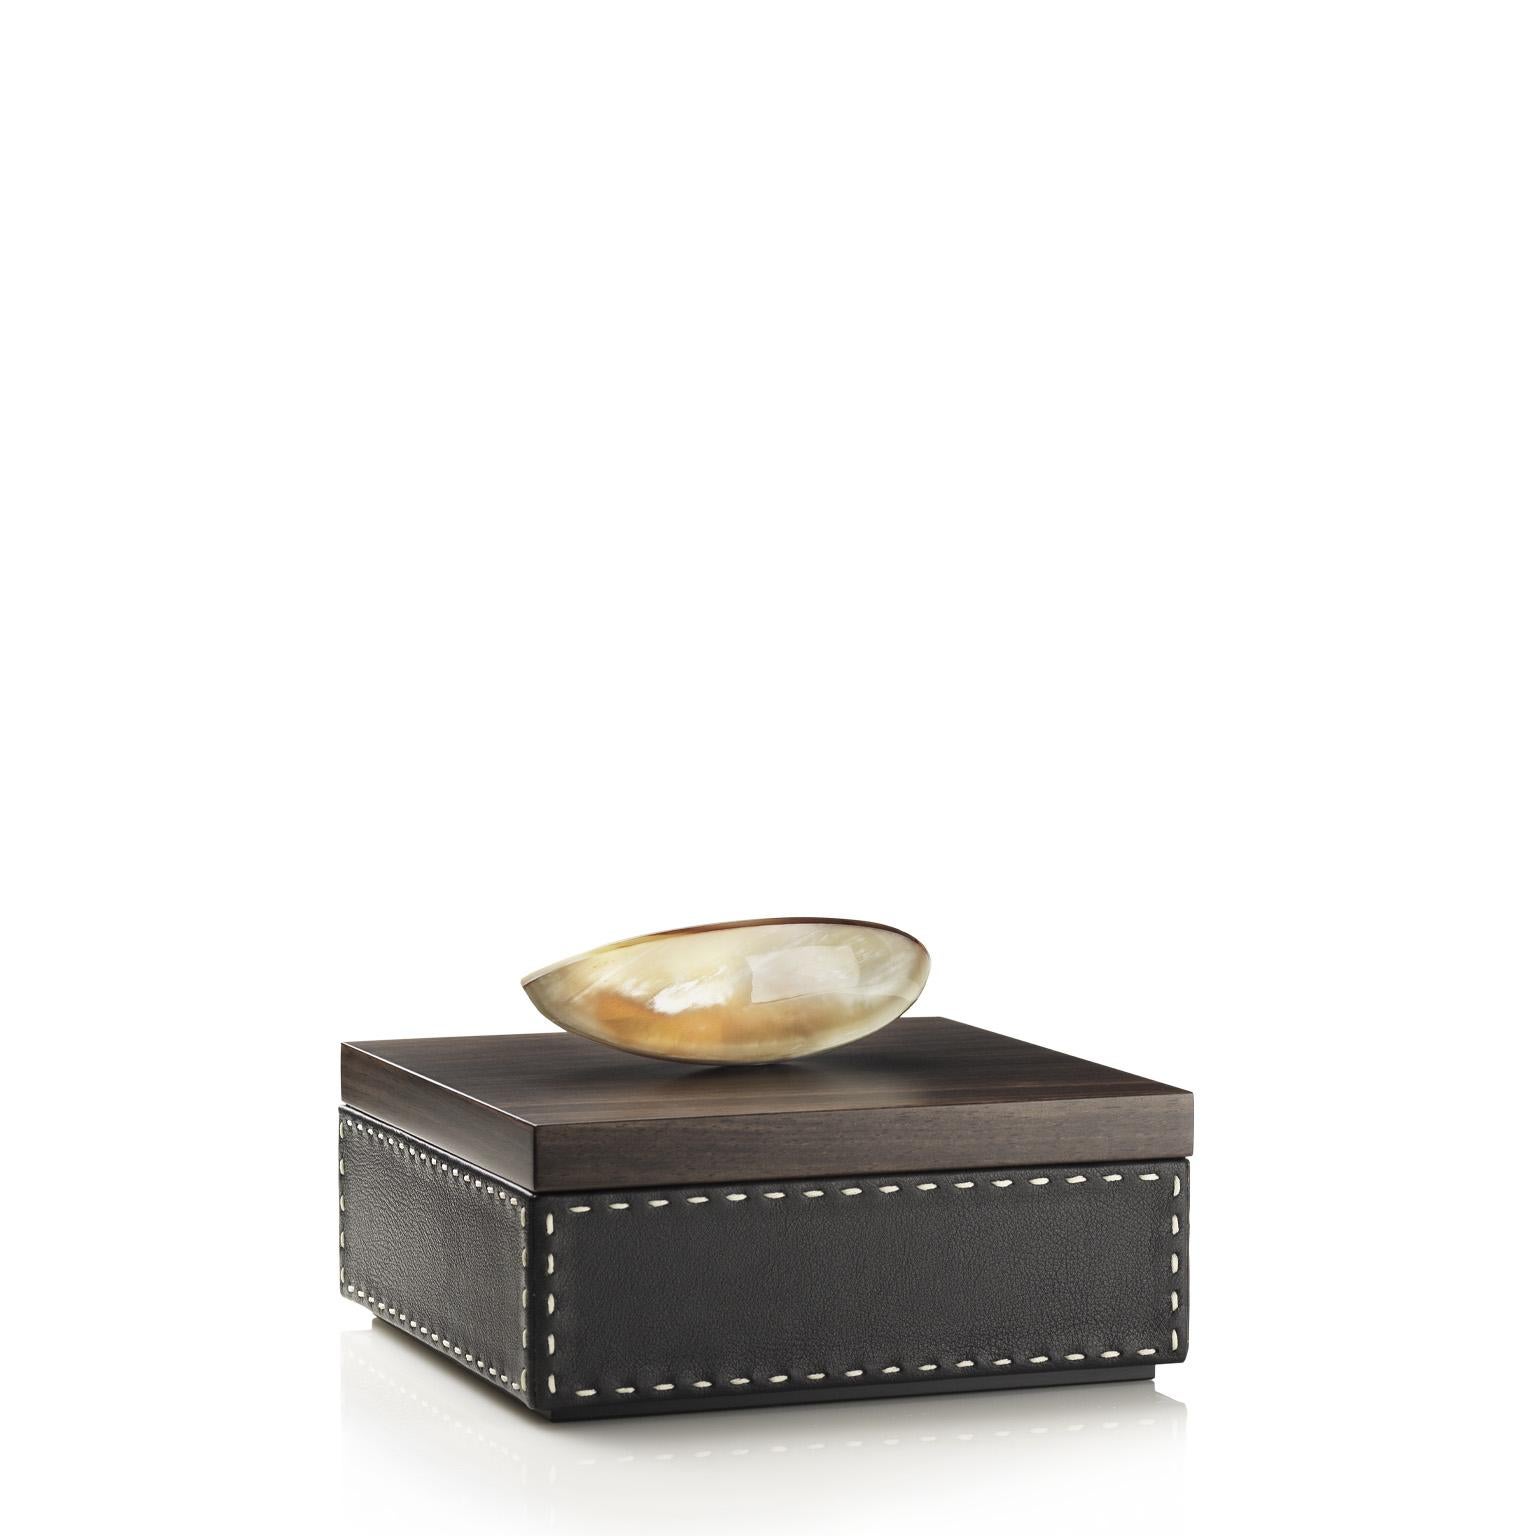 Capricia Square Box in Pebbled Leather with Handle in Corno Italiano, Mod. 4475 In New Condition For Sale In Recanati, Macerata